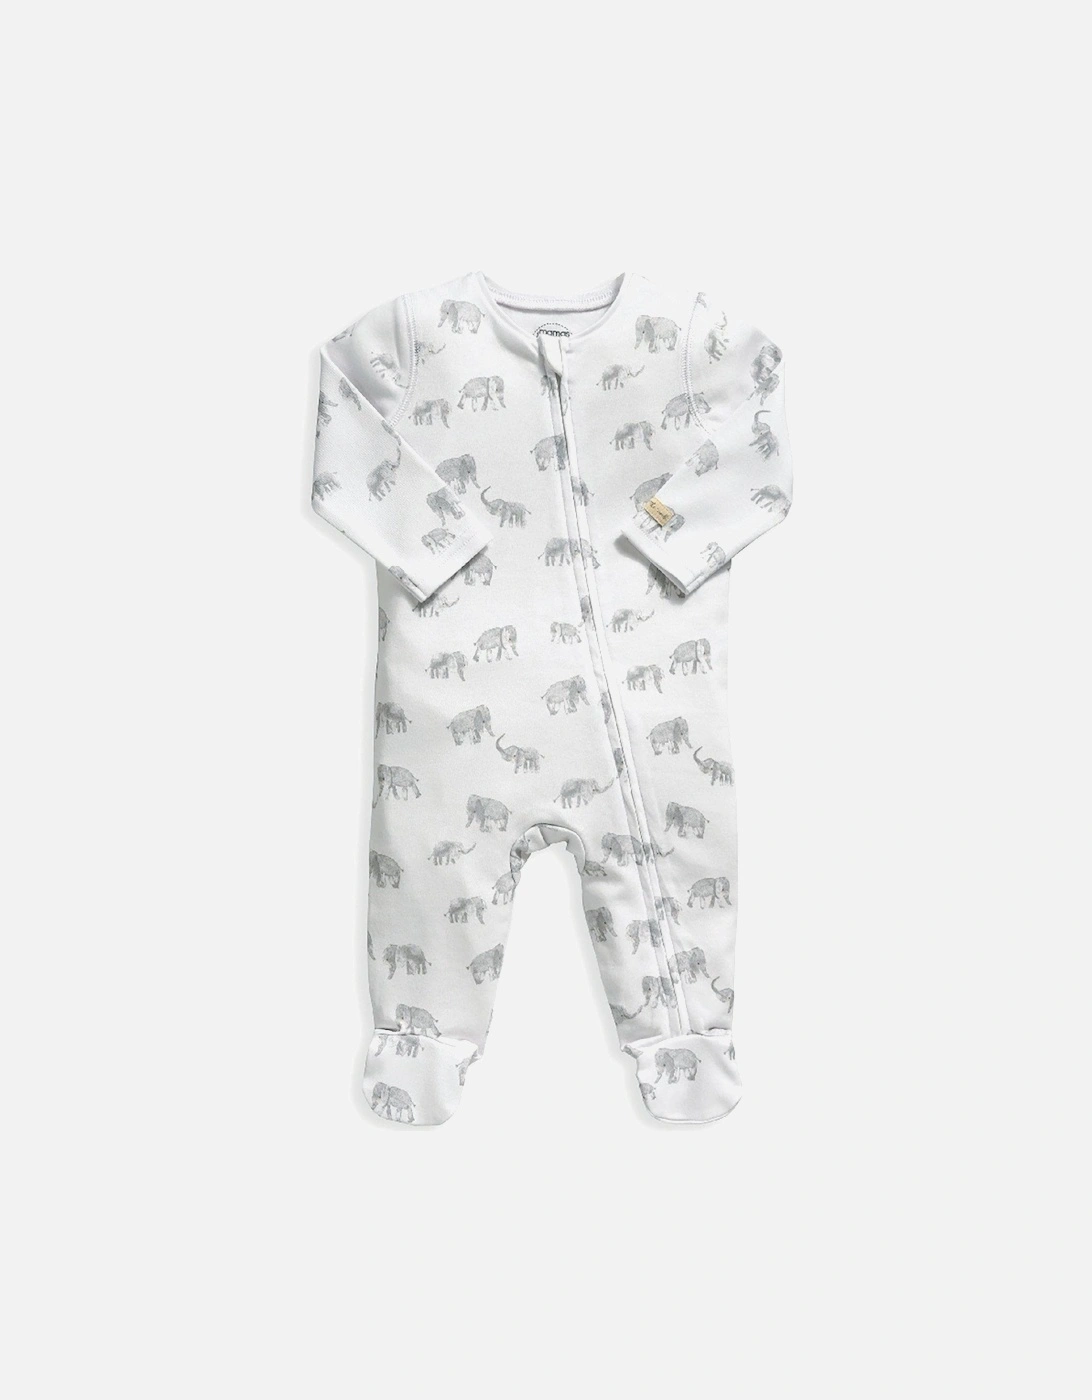 Baby Unisex Elephant Print Sleepsuit - White, 2 of 1